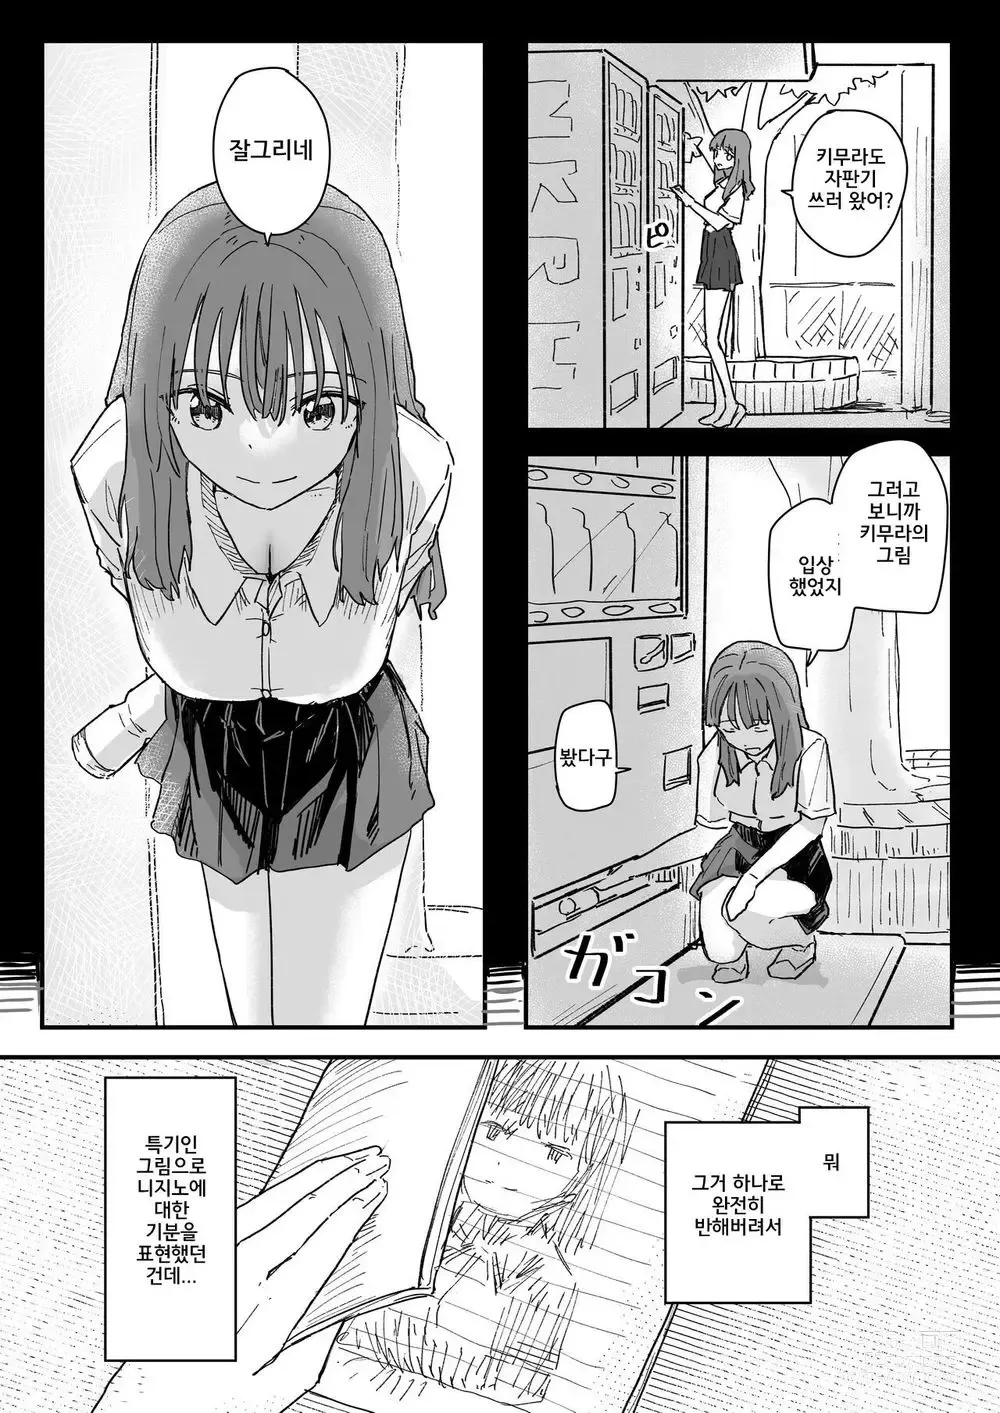 Page 4 of doujinshi 최면어플이 진짜일지도 모르기에 써봤다